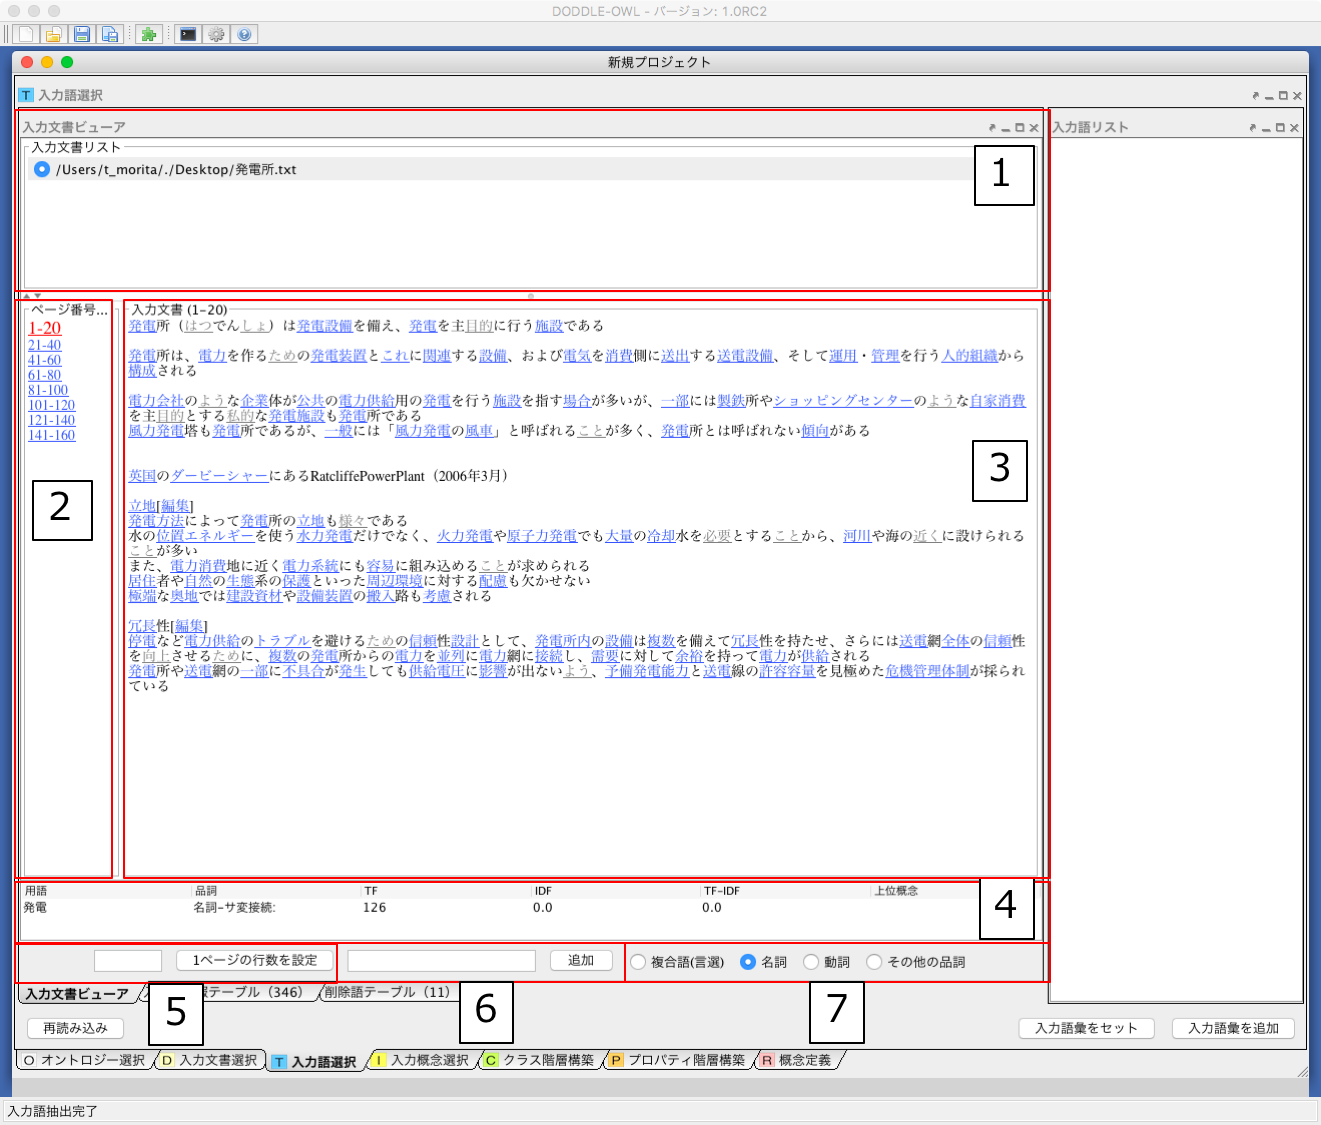 A screenshot of the Input Document Viewer